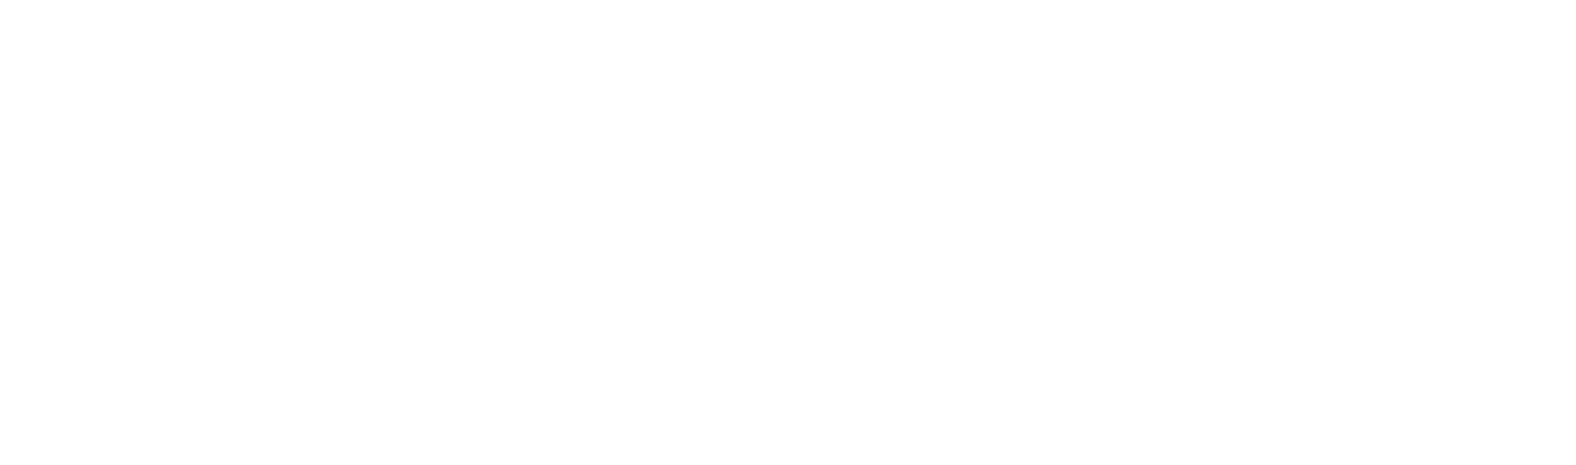 Northern Trust
 Logo groß für dunkle Hintergründe (transparentes PNG)